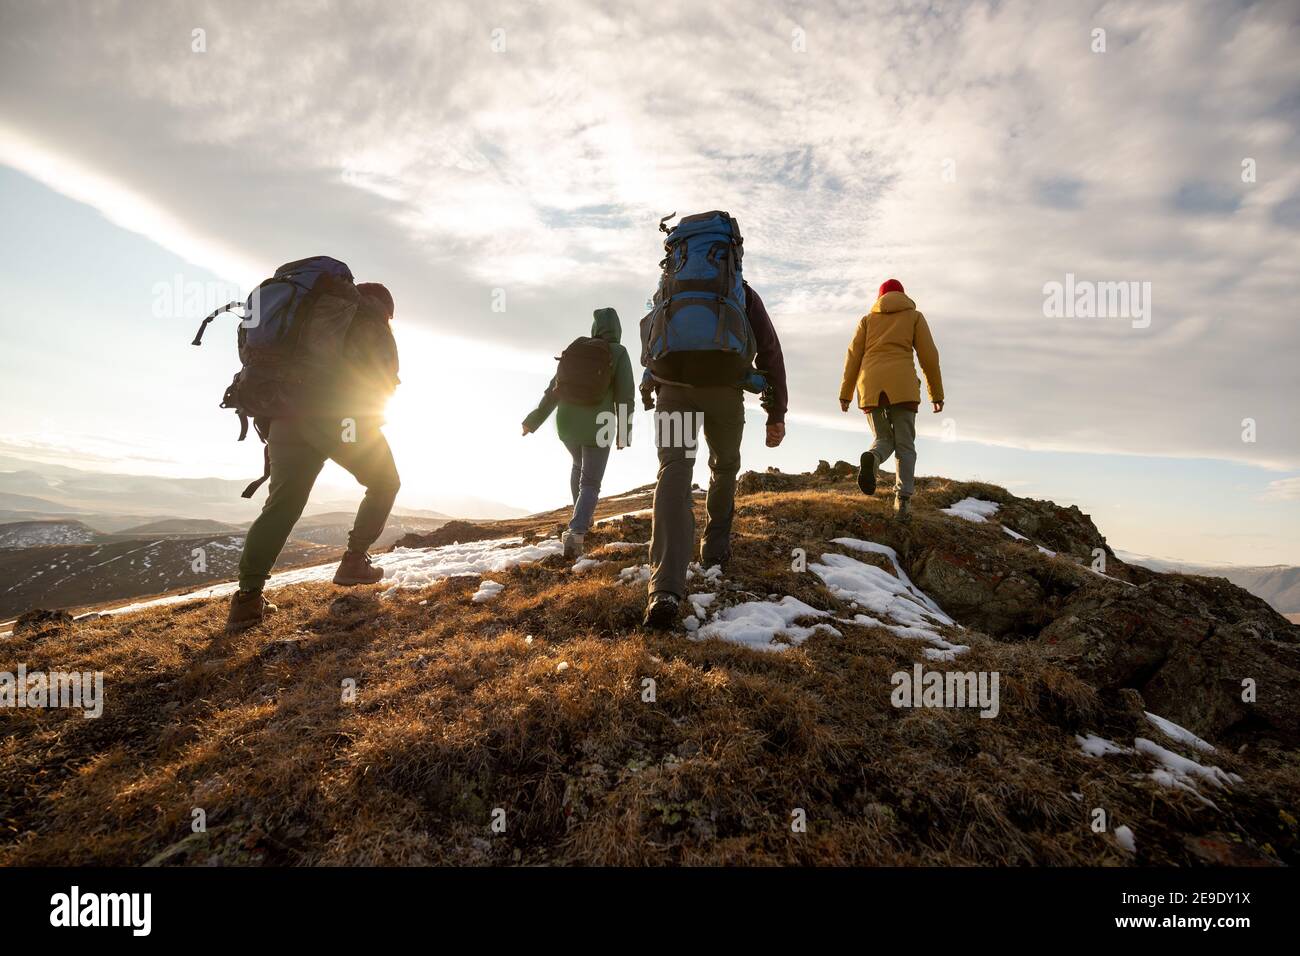 Groupe de quatre randonneurs avec sacs à dos marche dans les montagnes à coucher de soleil Banque D'Images